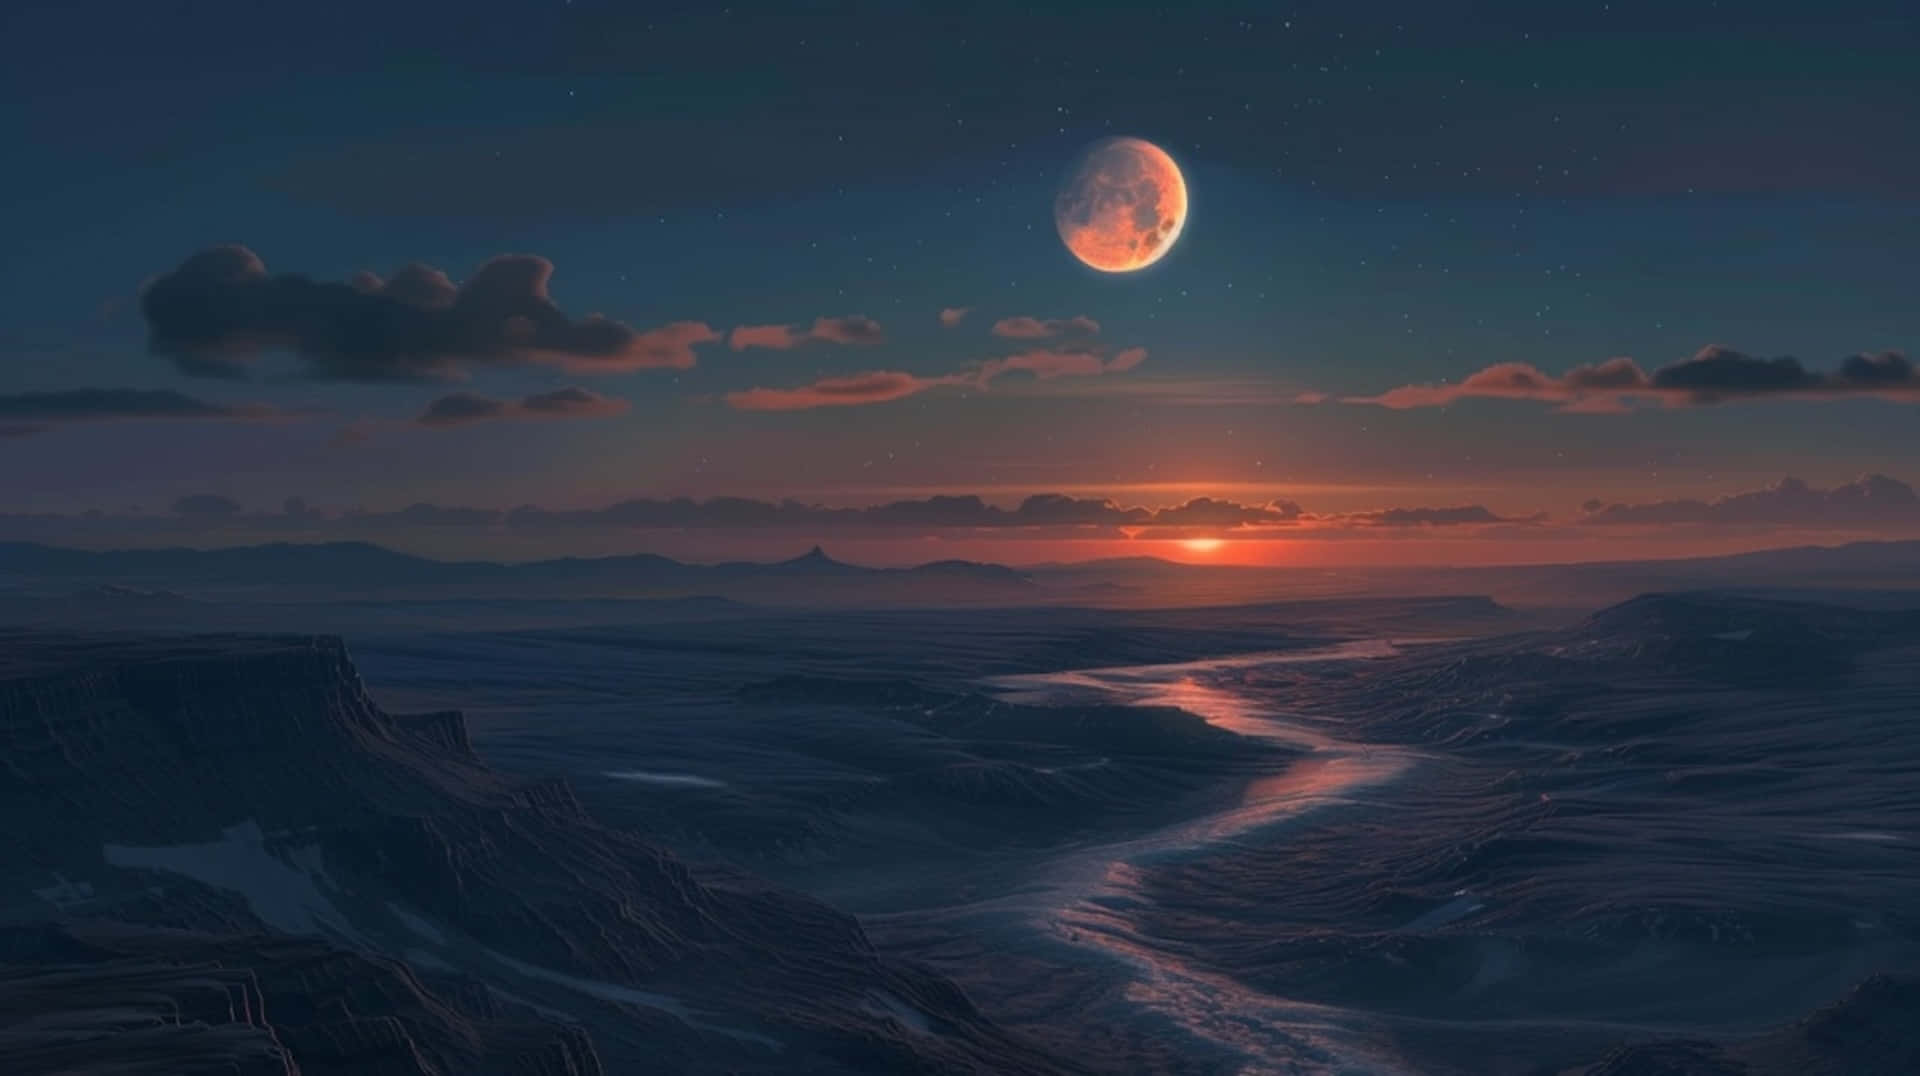 Twilight Moonrise Over Frozen Landscape.jpg Wallpaper